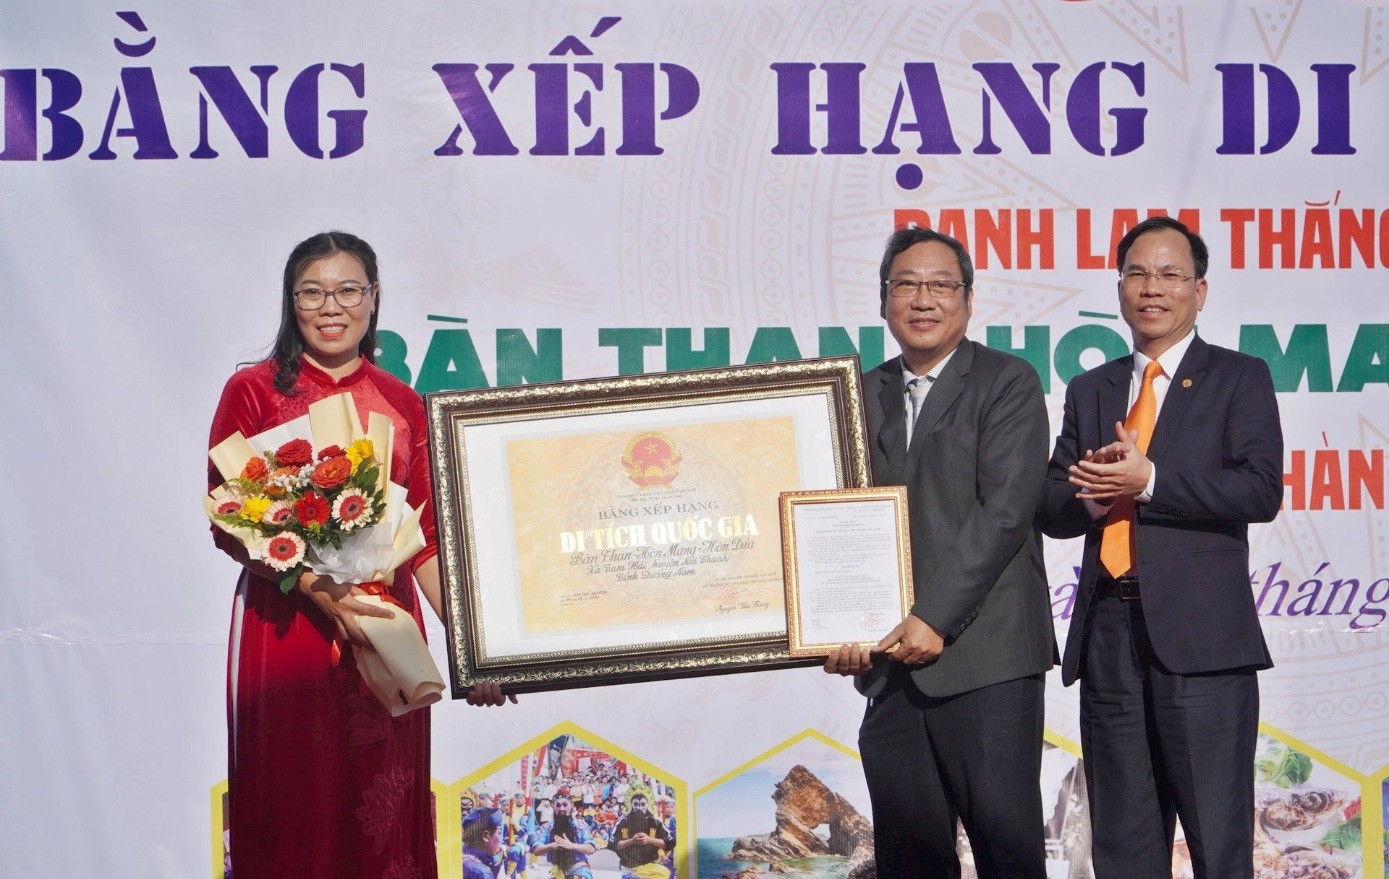 Đón nhận Bằng xếp hạng di tích quốc gia danh lam thắng cảnh Bàn Than - Hòn Mang - Hòn Dứa